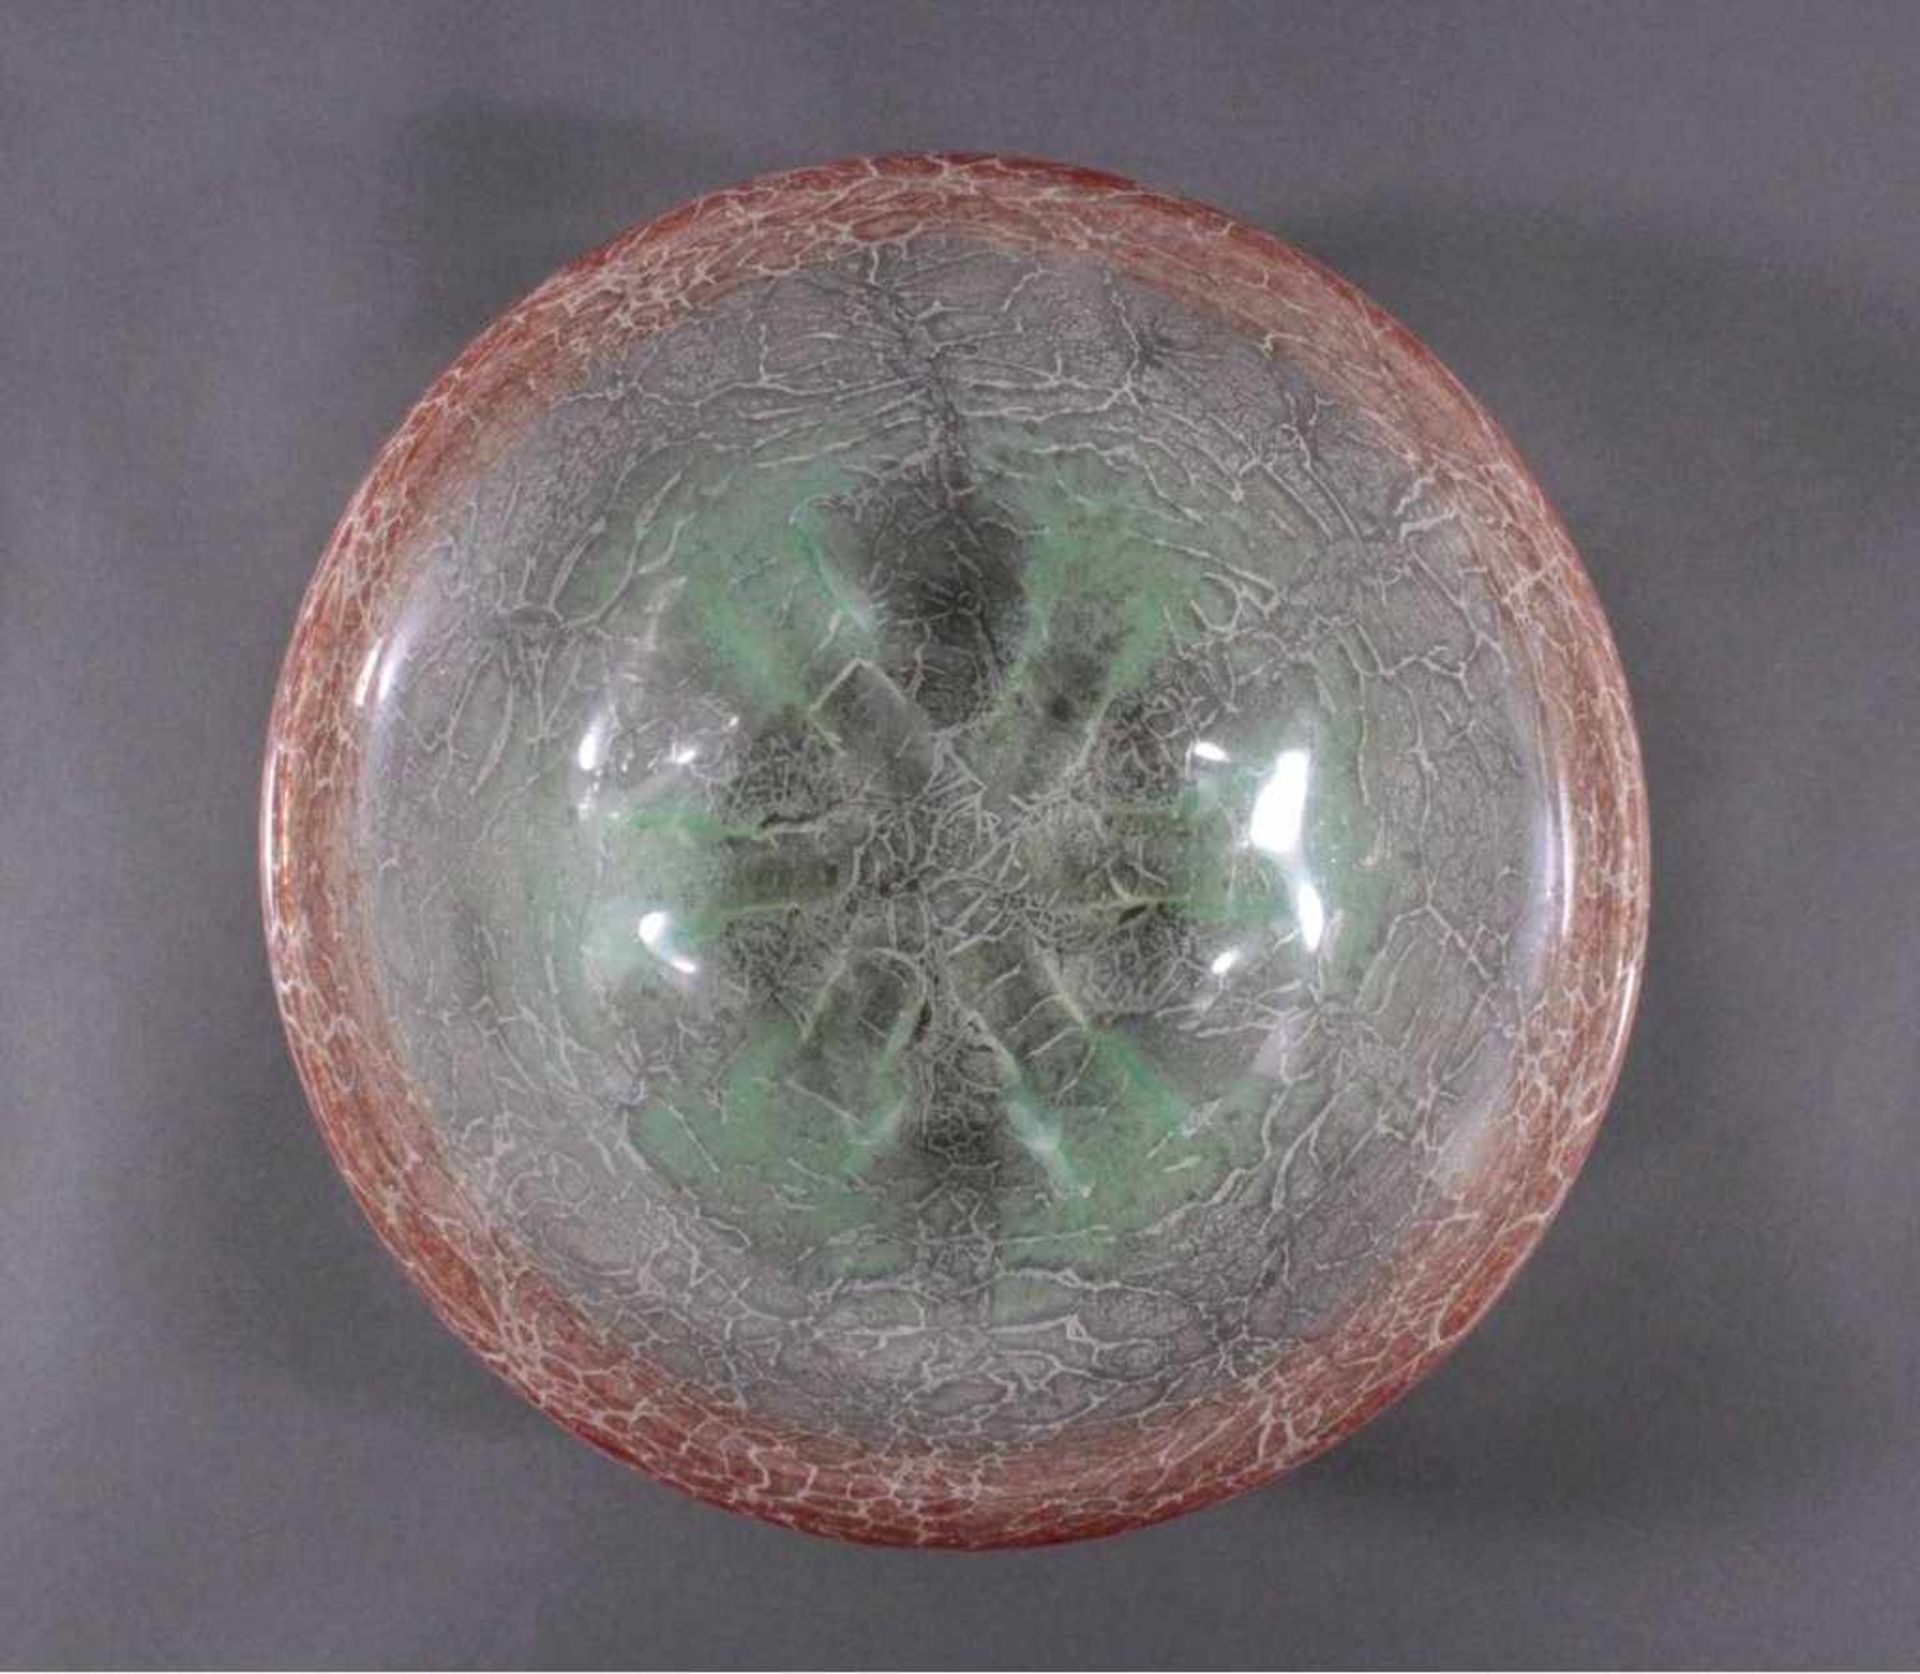 WMF-Ikora-Schale, 1930er JahreFarbloses Glass mit hellrot und grüne Einschmelzungen, ca.H-7 cm, D- - Image 2 of 4